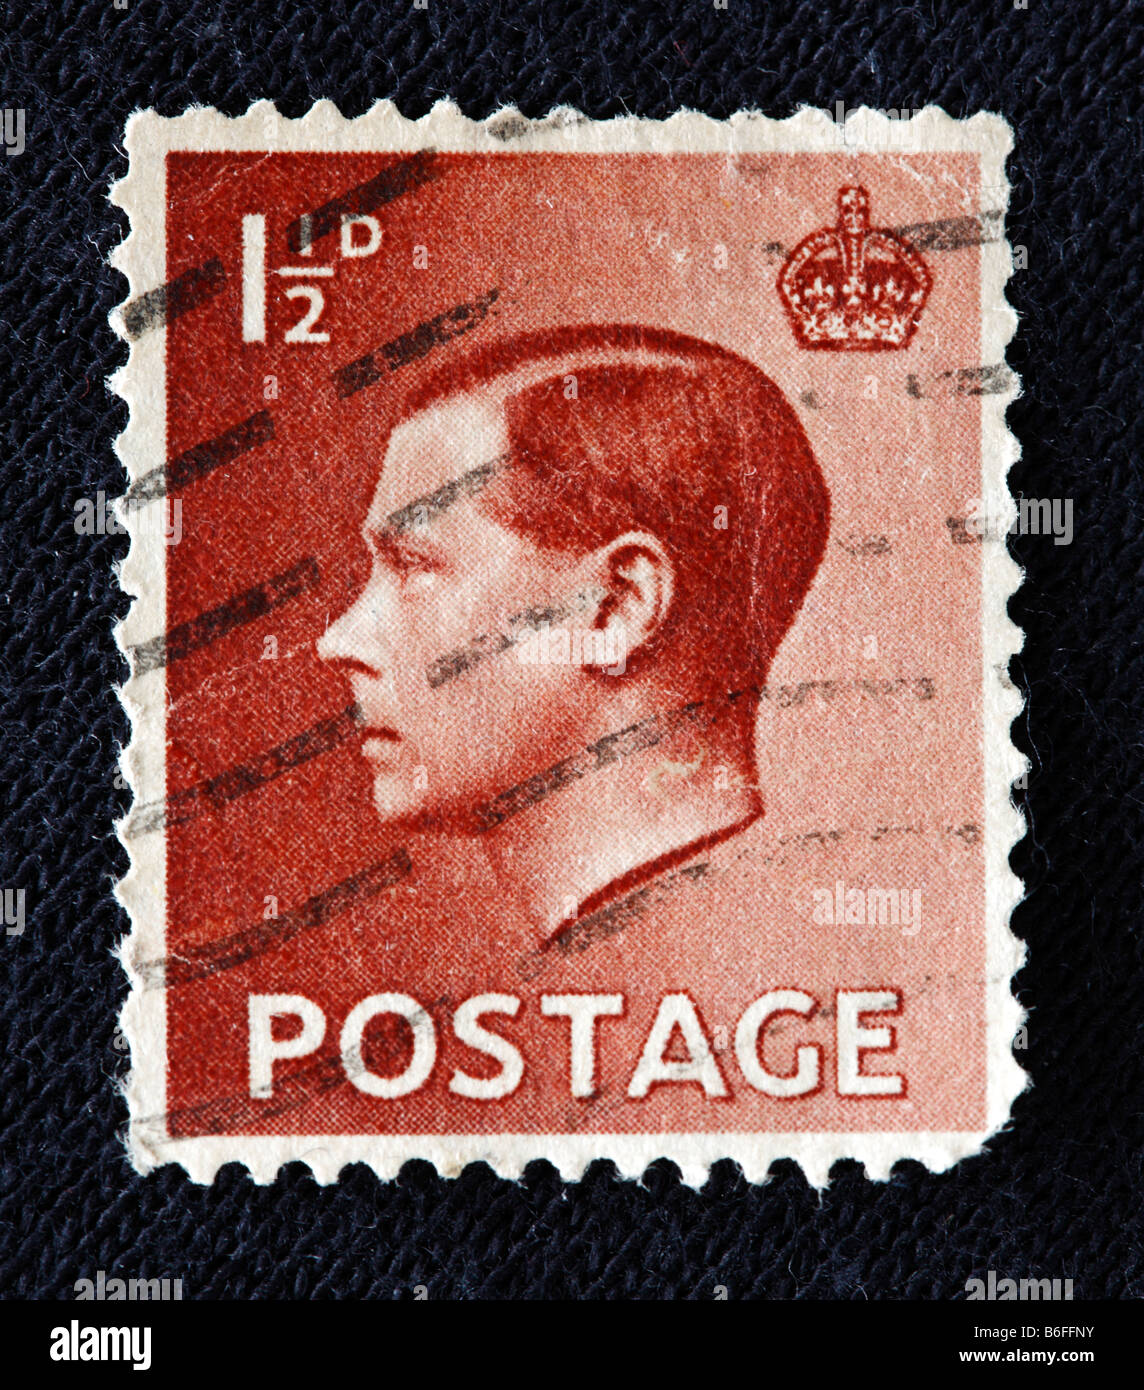 Le roi Édouard VIII du Royaume-Uni (1936), timbre-poste, UK Banque D'Images